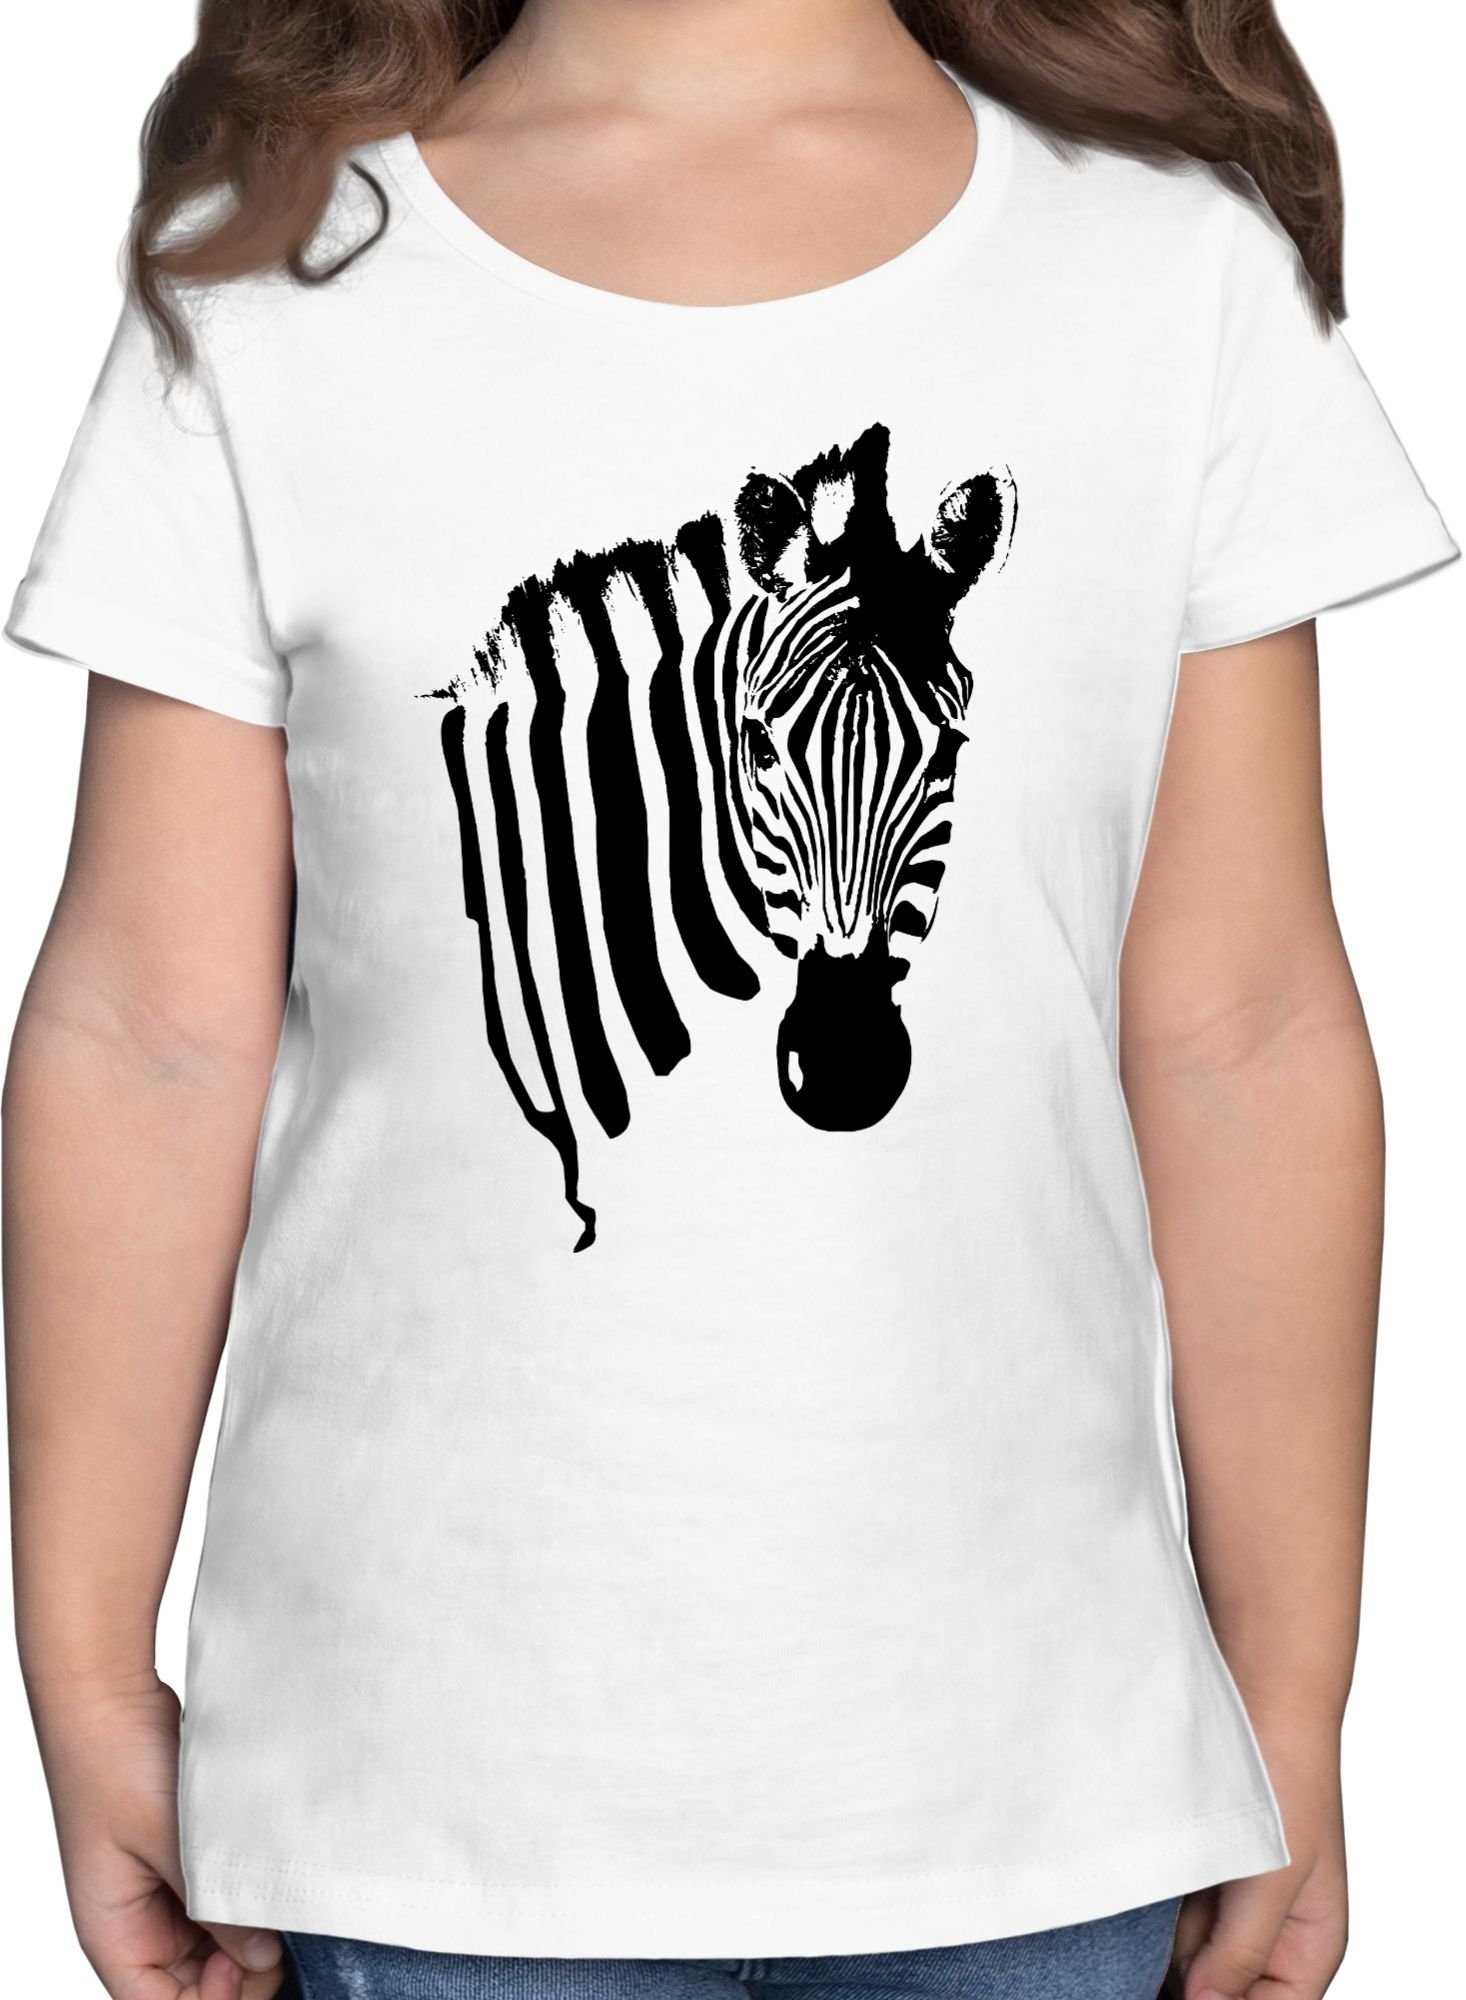 Fasching Afrika Zebra-Kostüm Zebra T-Shirt Weiß Zebramuster Tiermotiv 1 Zebrastreifen Shirtracer & Safari - Karneval